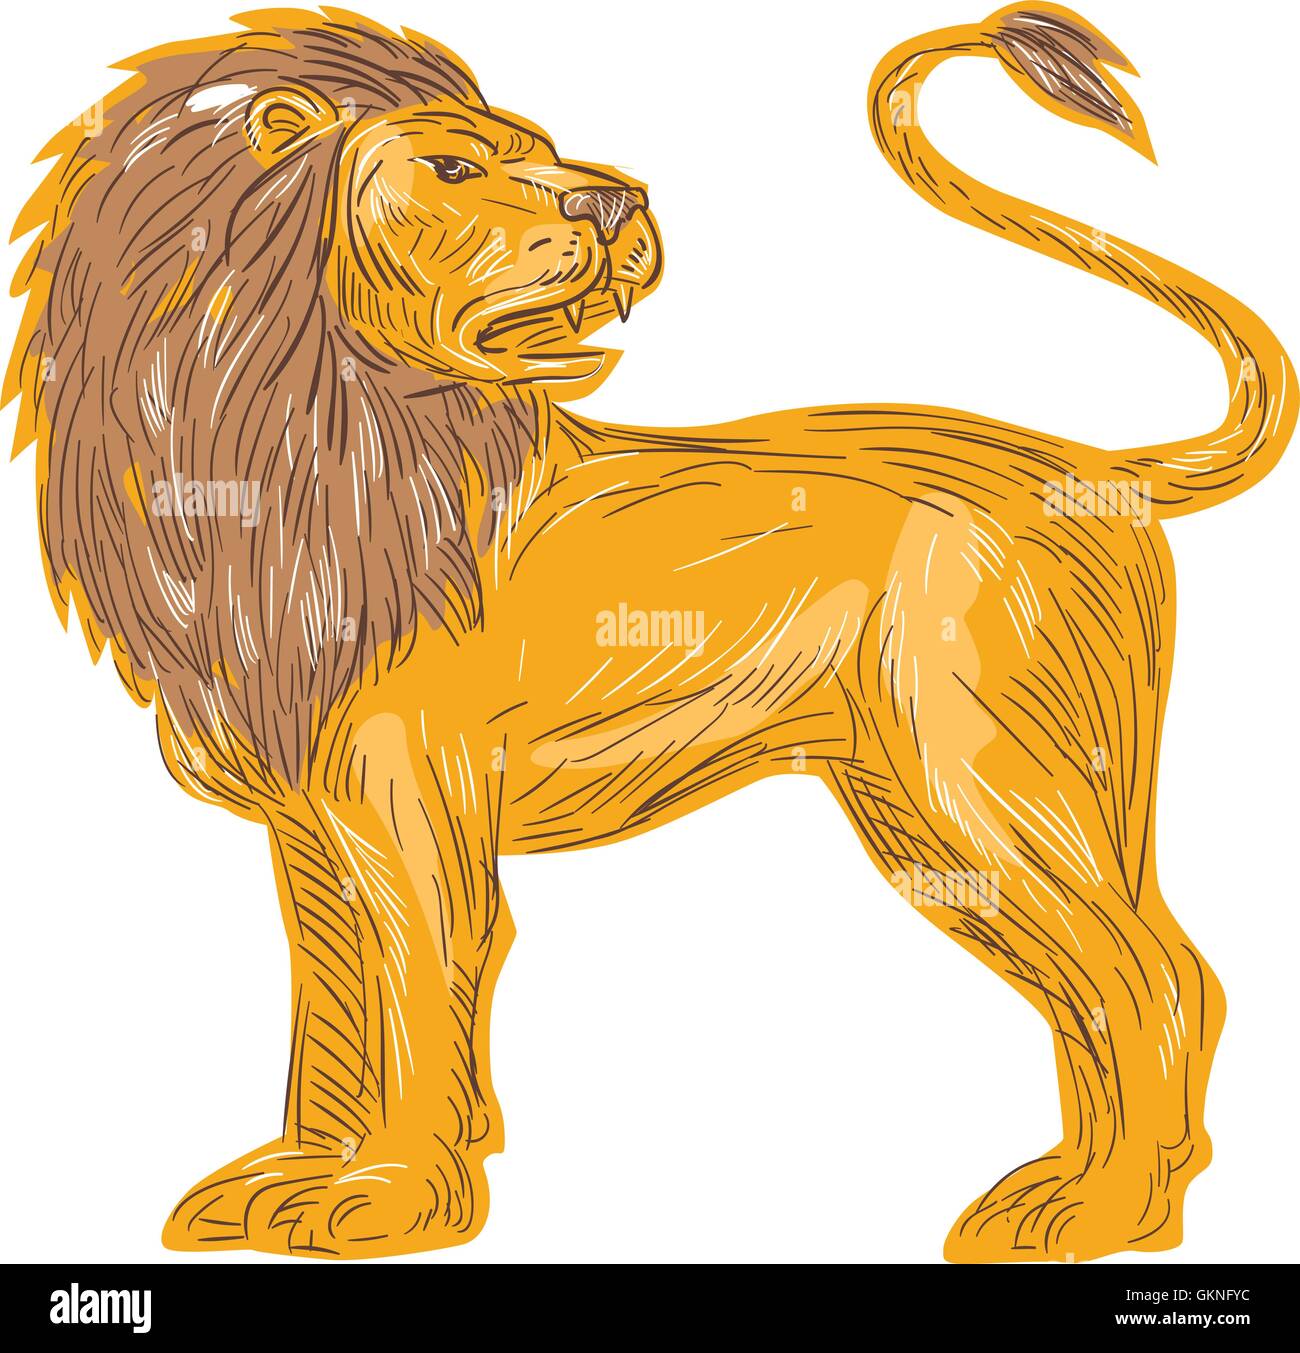 Croquis dessin illustration style de la colère du lion rugissant de grands félins crocs dents montrant à la recherche à l'arrière vu de côté Illustration de Vecteur